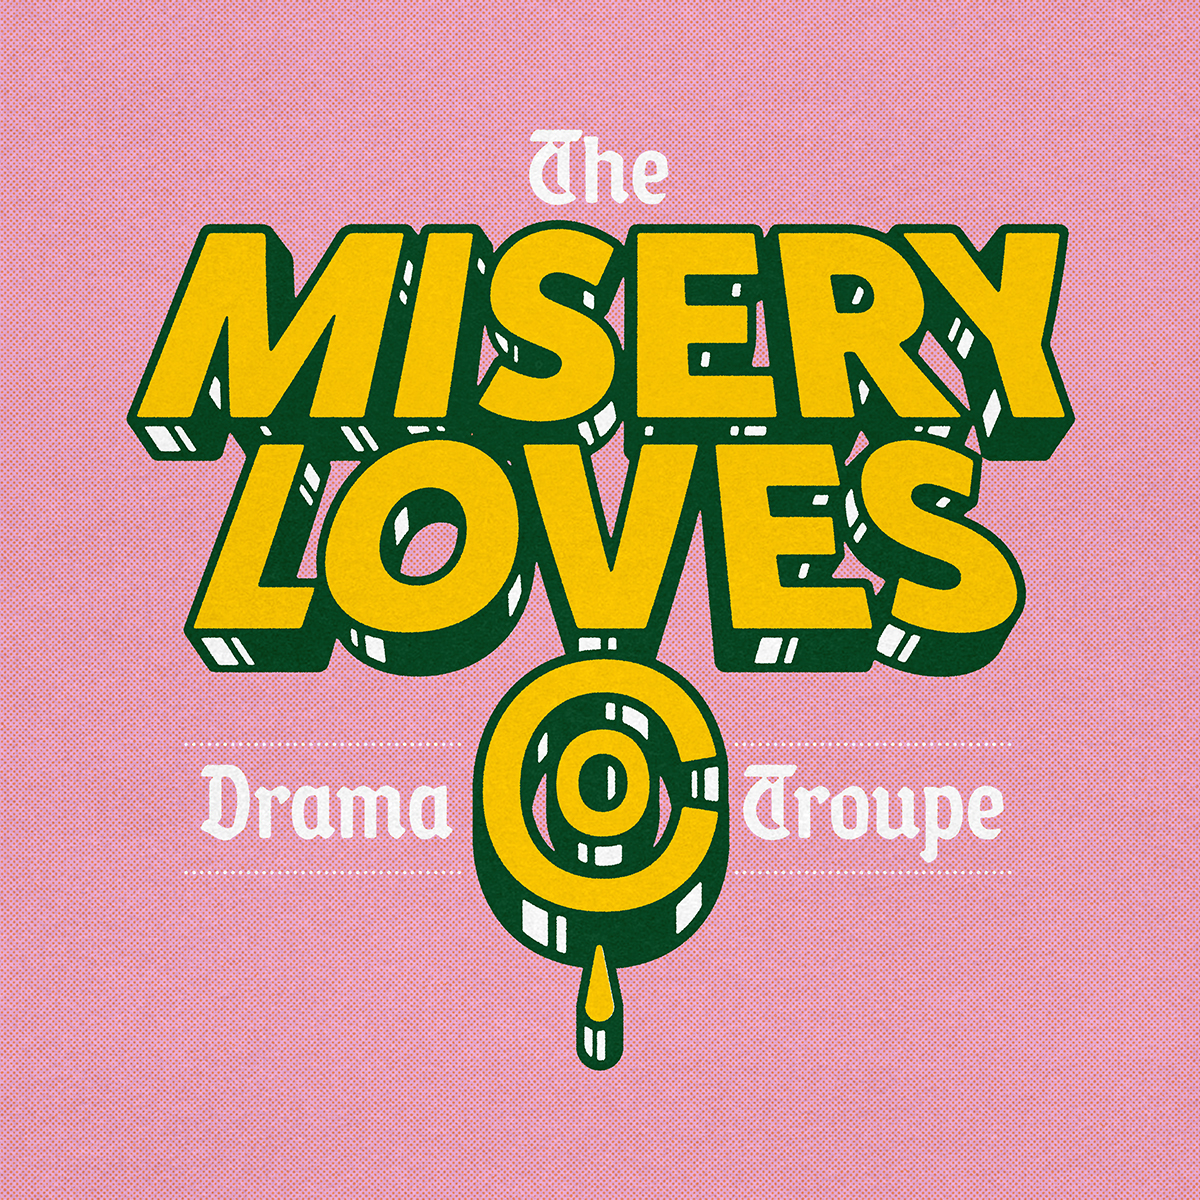 Misery Loves Co.